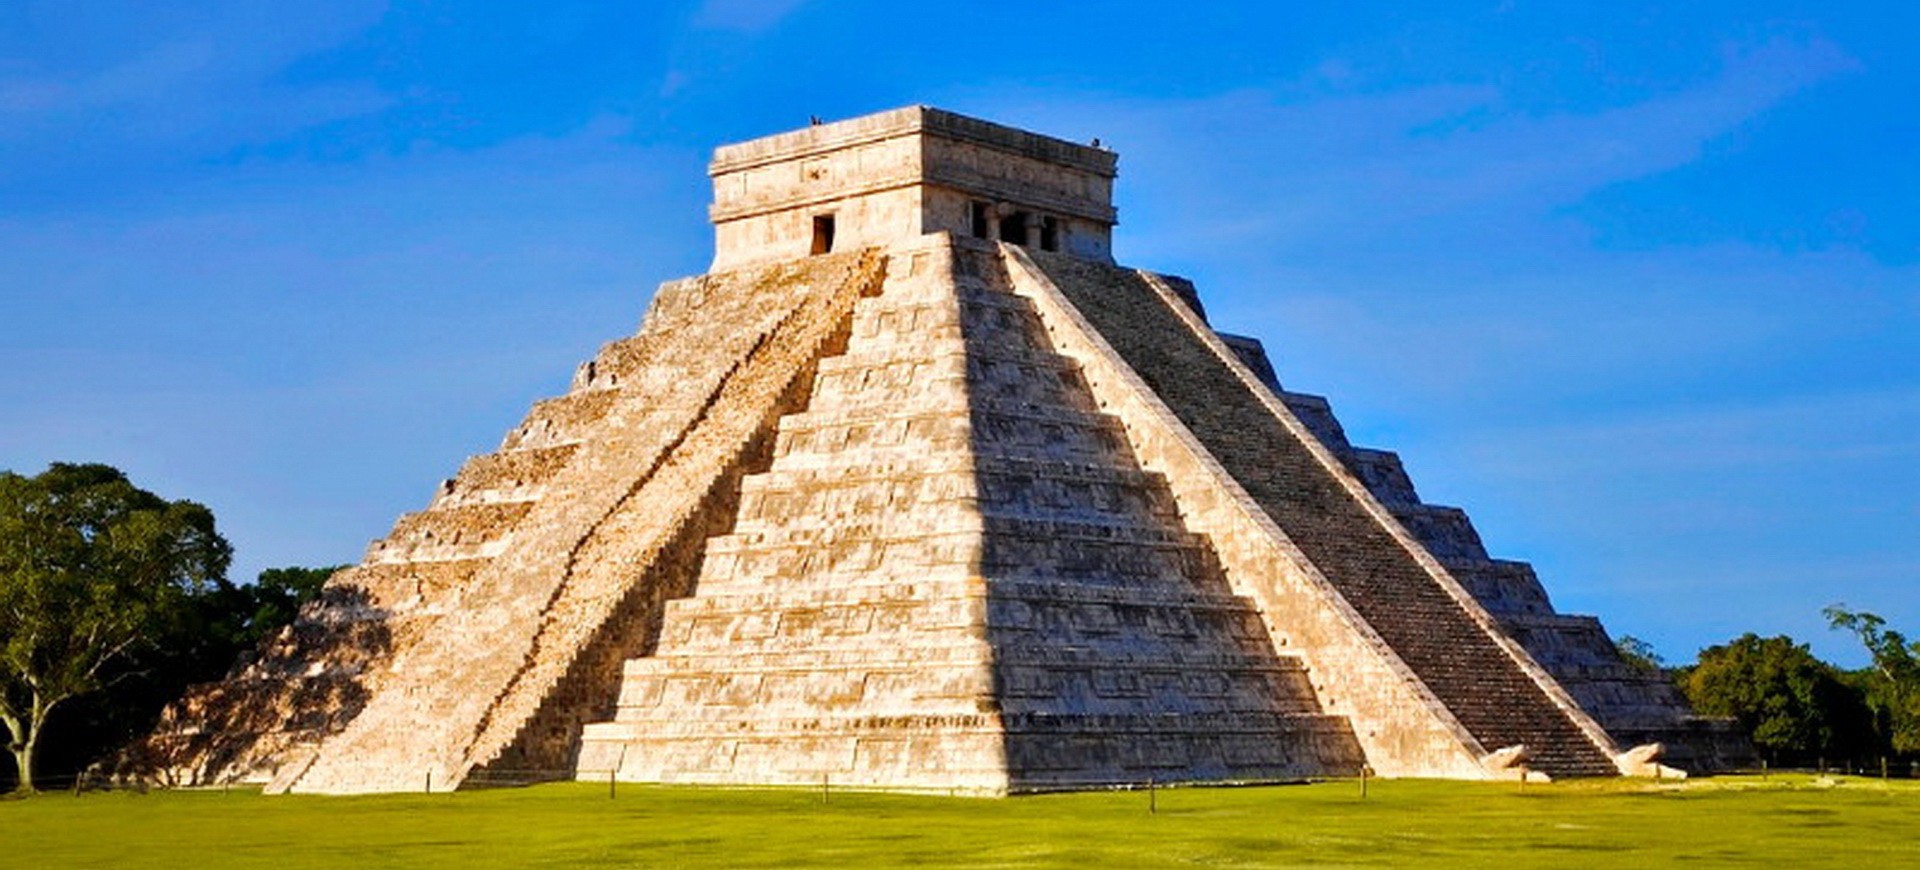 Amérique Centrale Mexique Chichen Itza Pyramide de Kukulcan